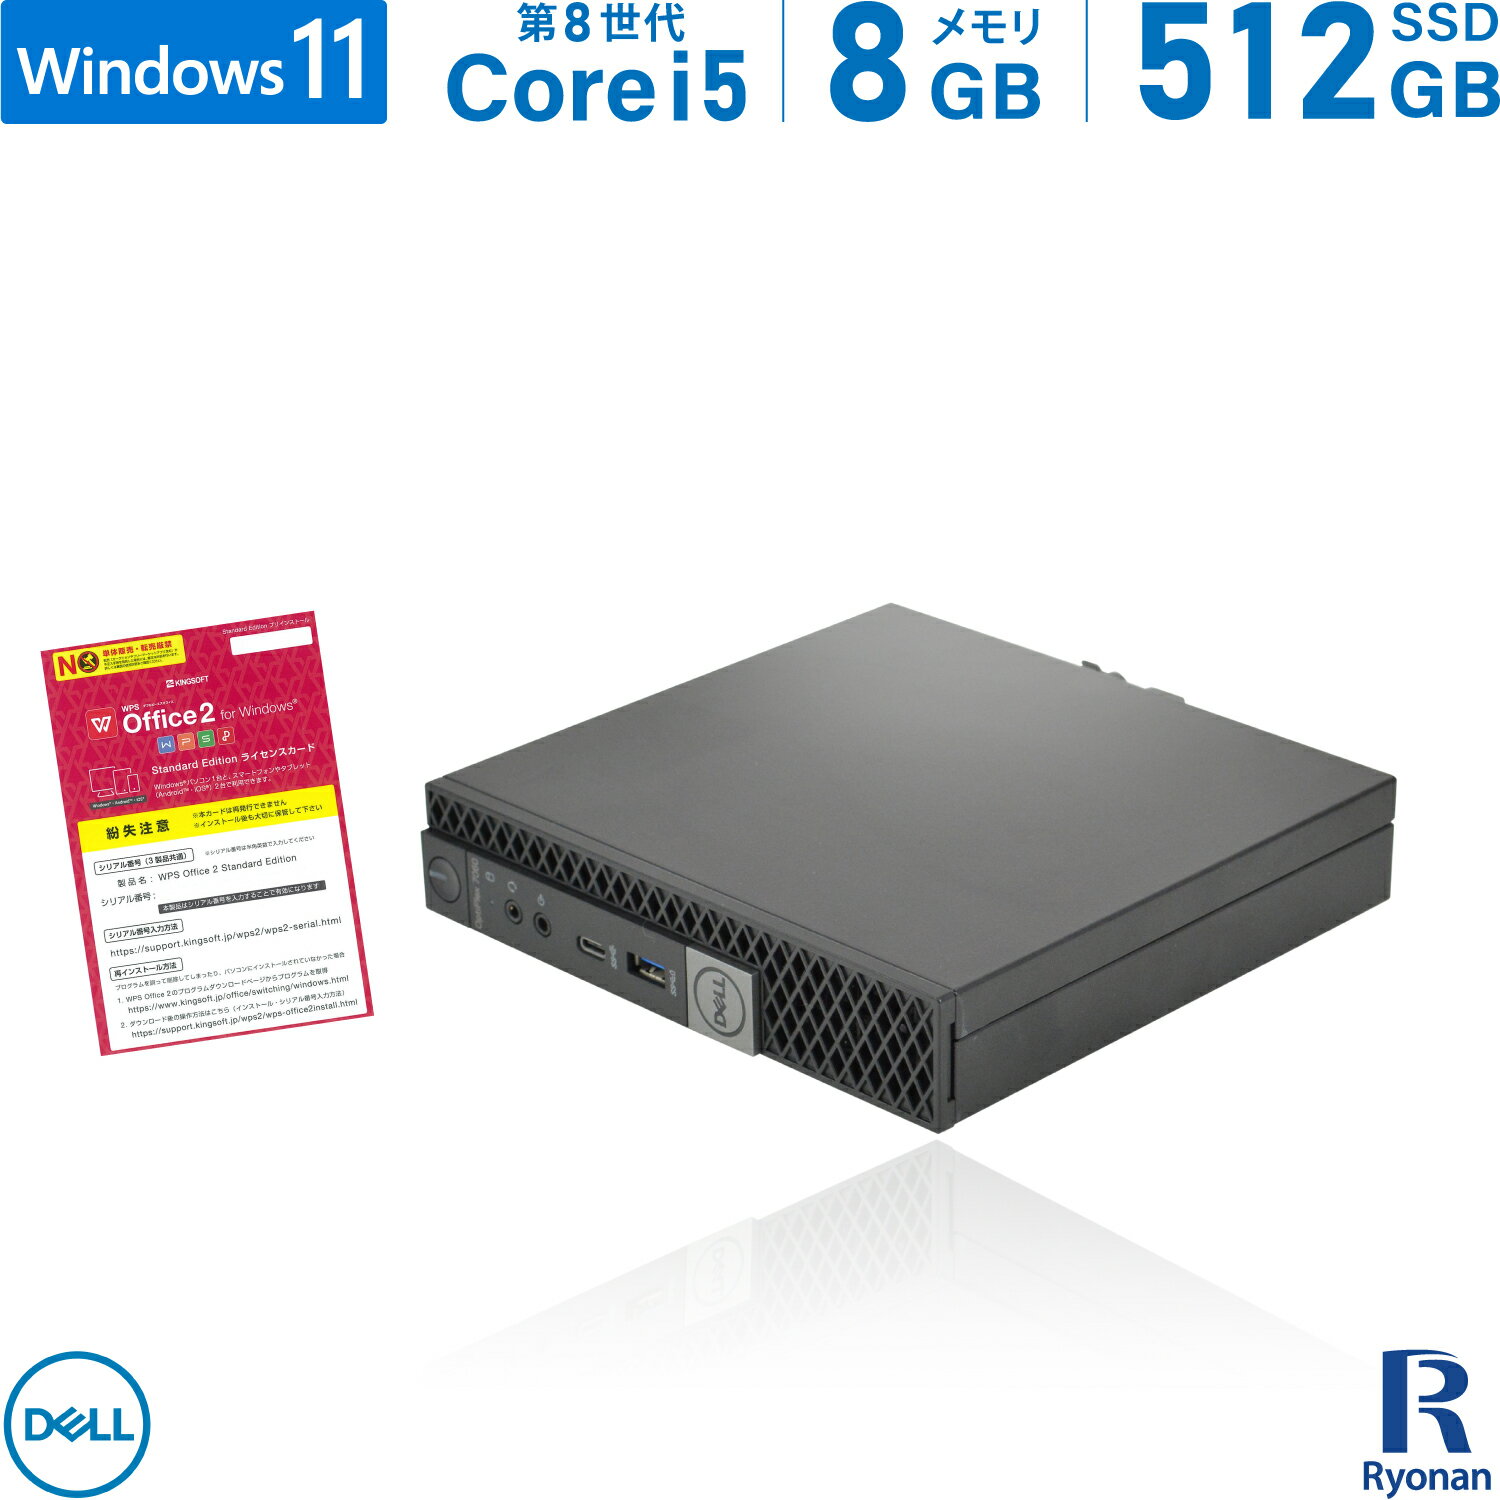 【10 OFFクーポン配布中】DELL OptiPlex 7060 micro 第8世代 Core i5 メモリ:8GB 新品SSD:512GB デスクトップパソコン USB 3.0 Type-C Office付 パソコン デスクトップ 中古パソコン Windows 11 搭載 Windows 10 無線LAN付き ミニPC